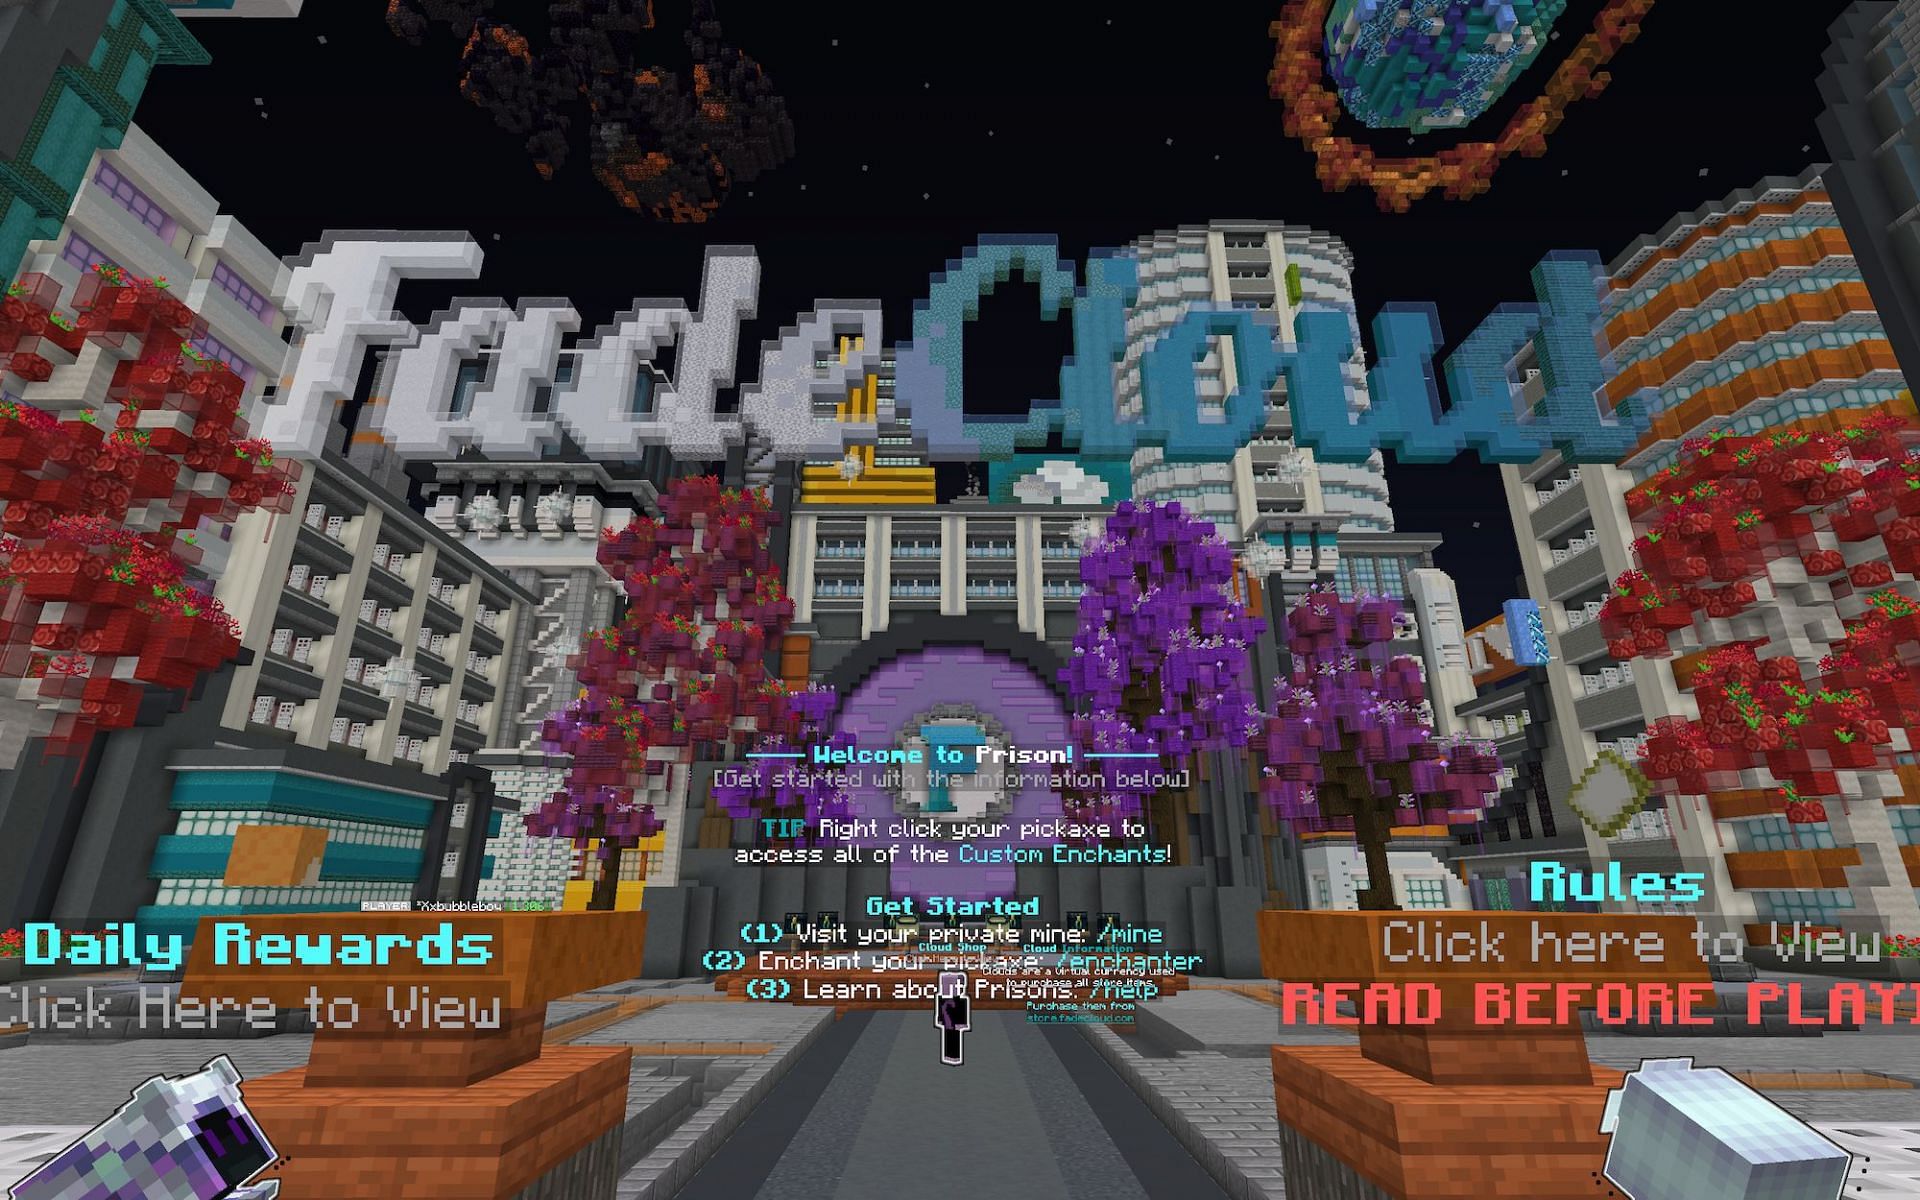 FadeCloud [Image via Minecraft]